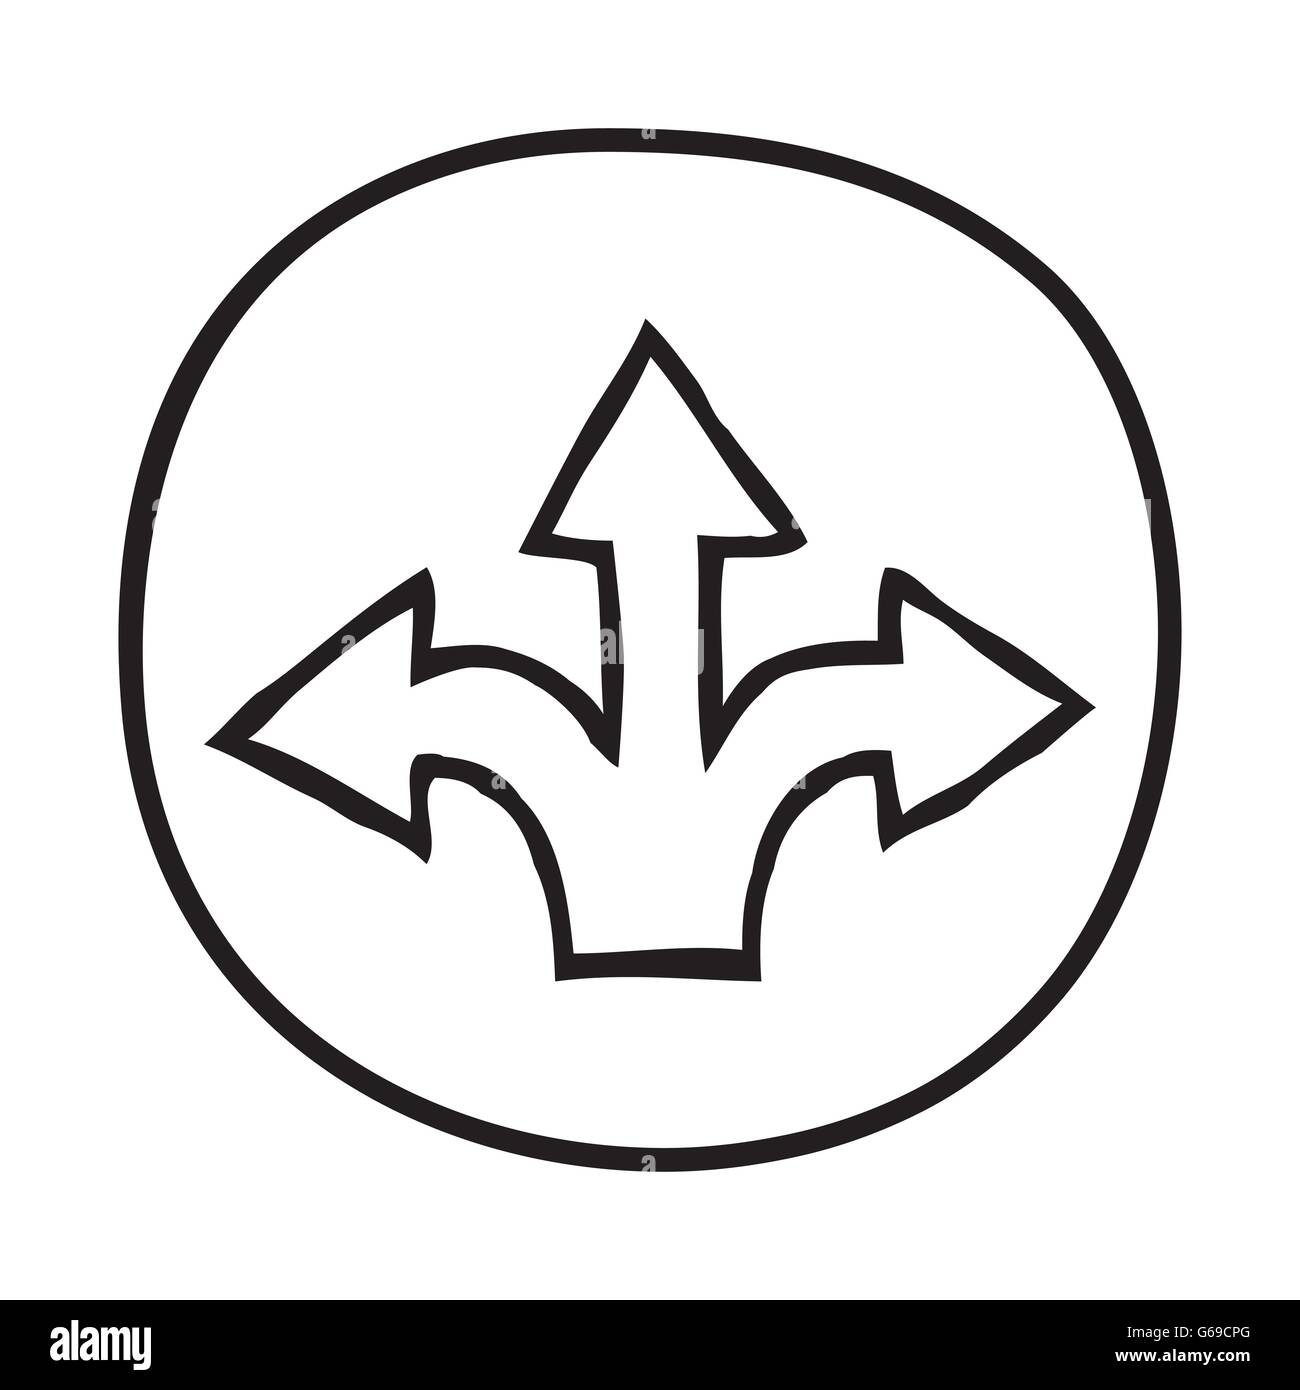 Doodle 3 Arrows icon. Stock Vector